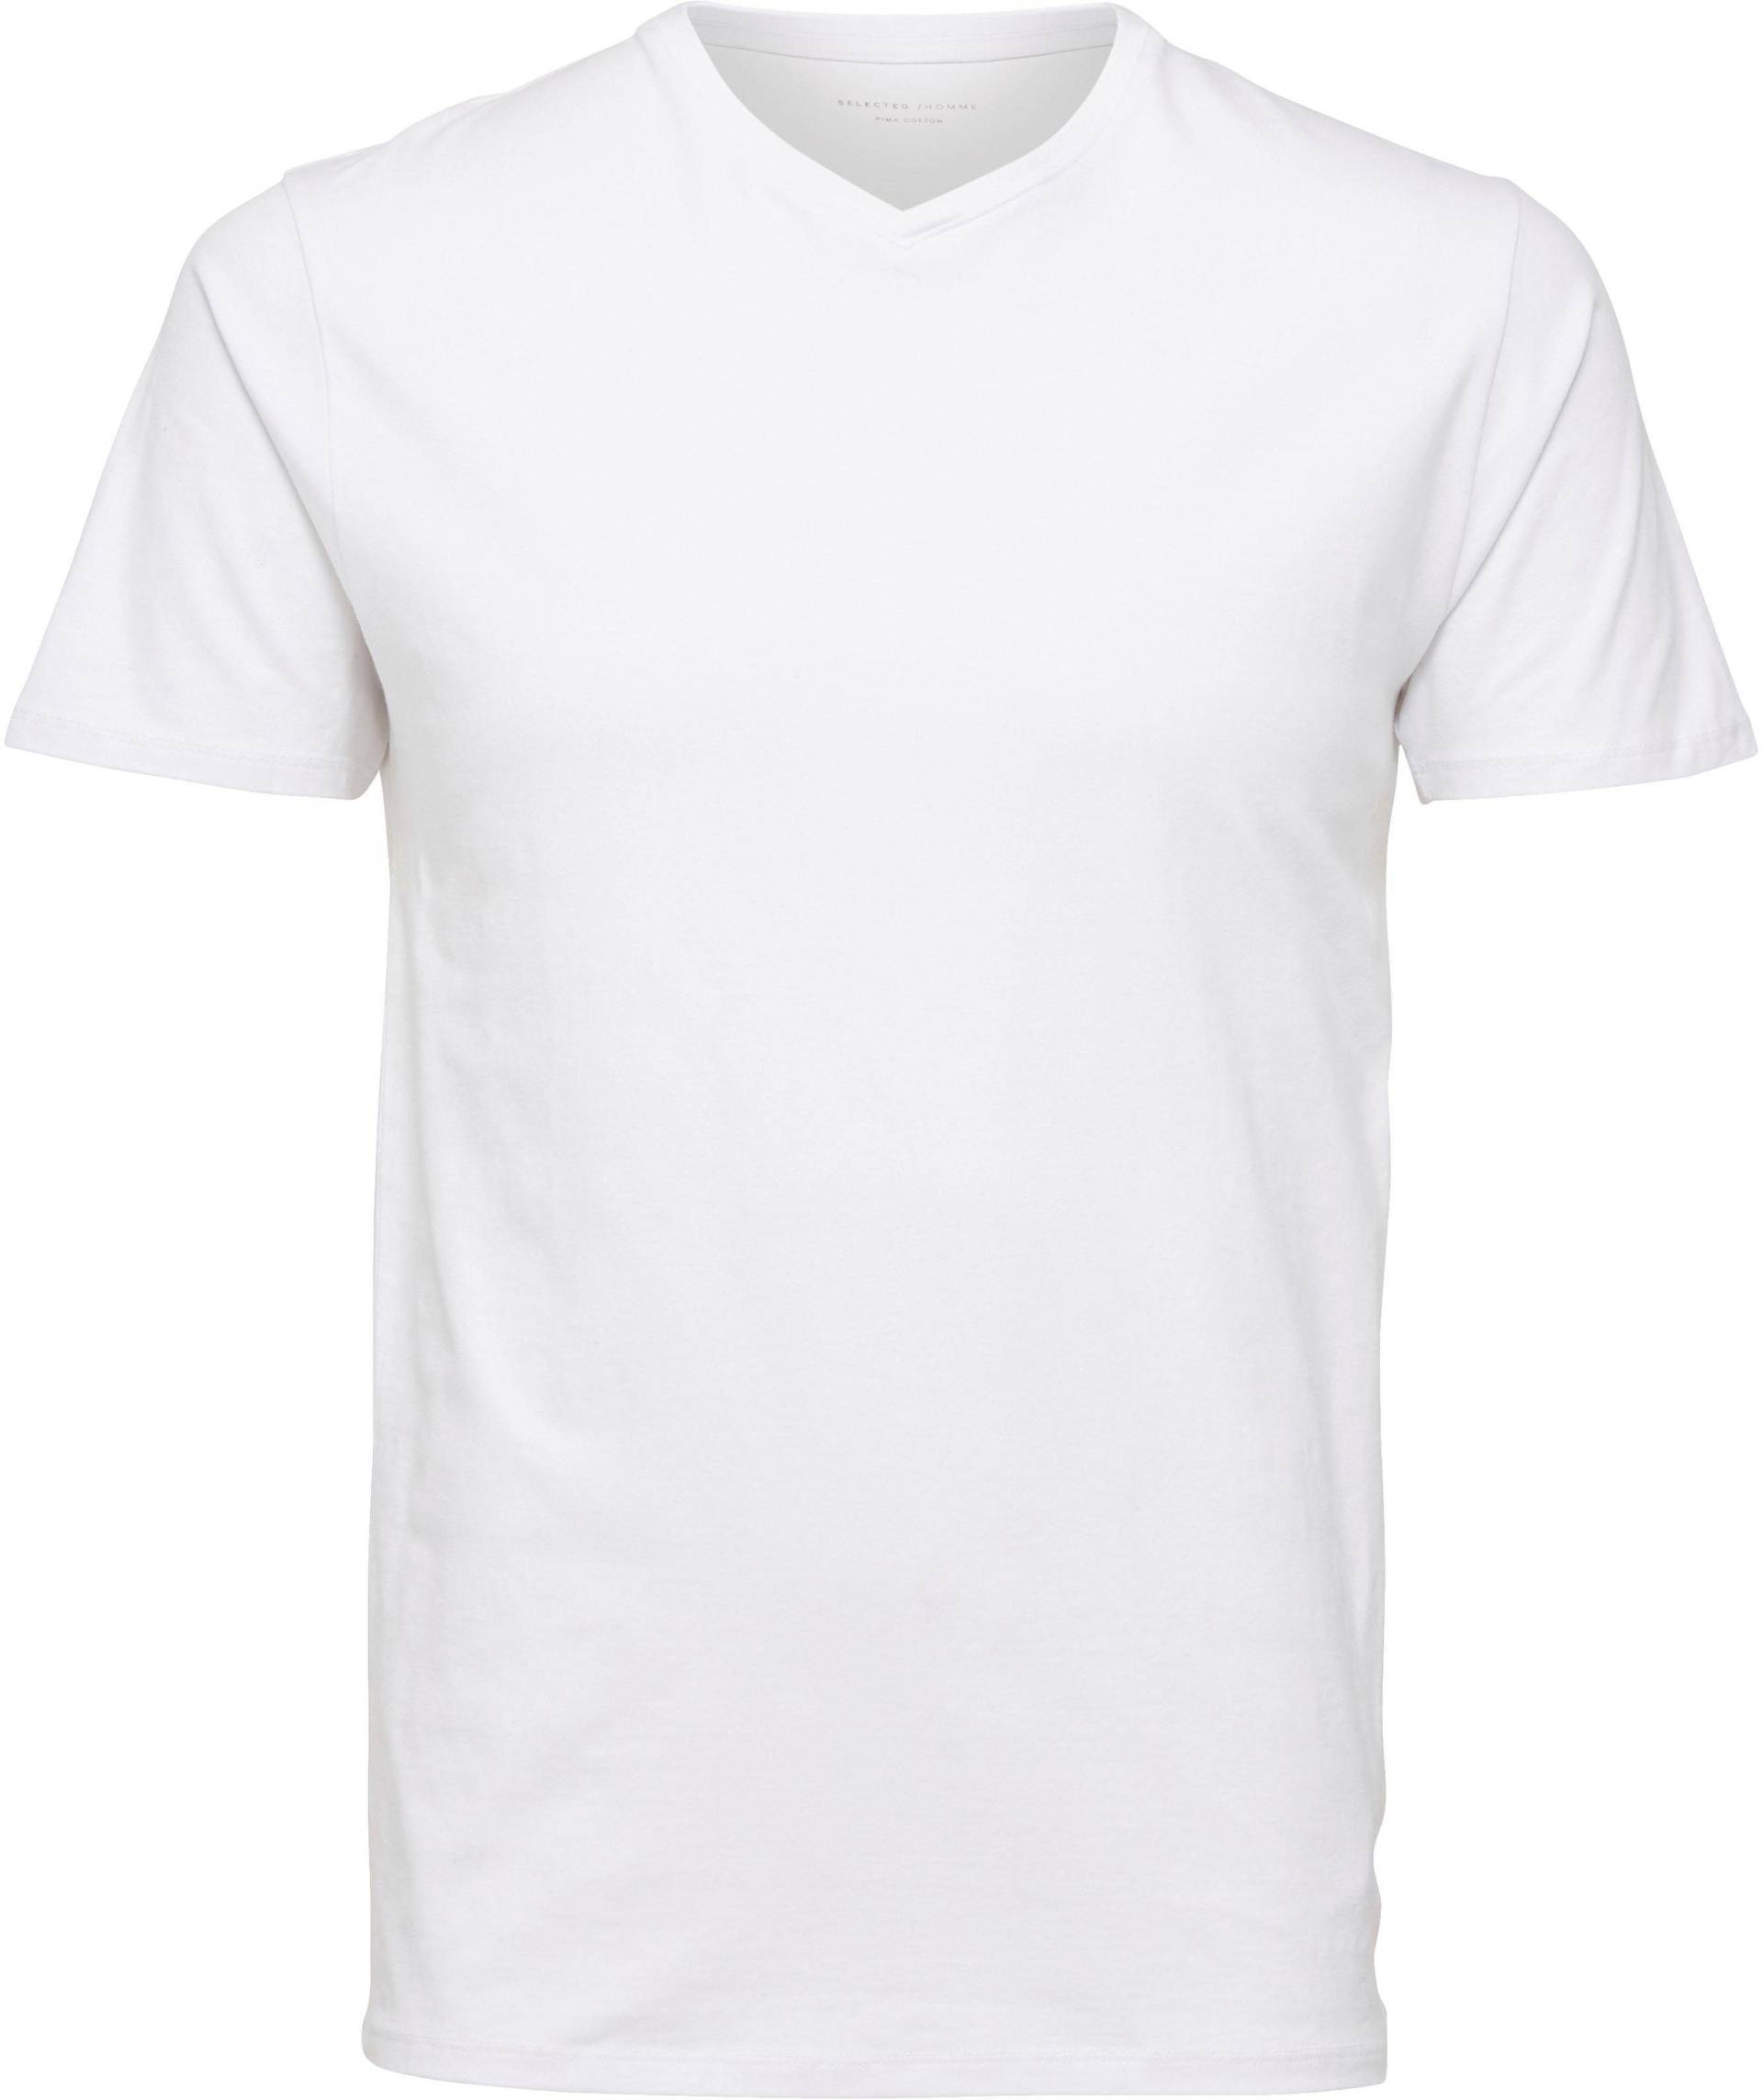 SELECTED HOMME V-Shirt »Basic V-Shirt« von SELECTED HOMME